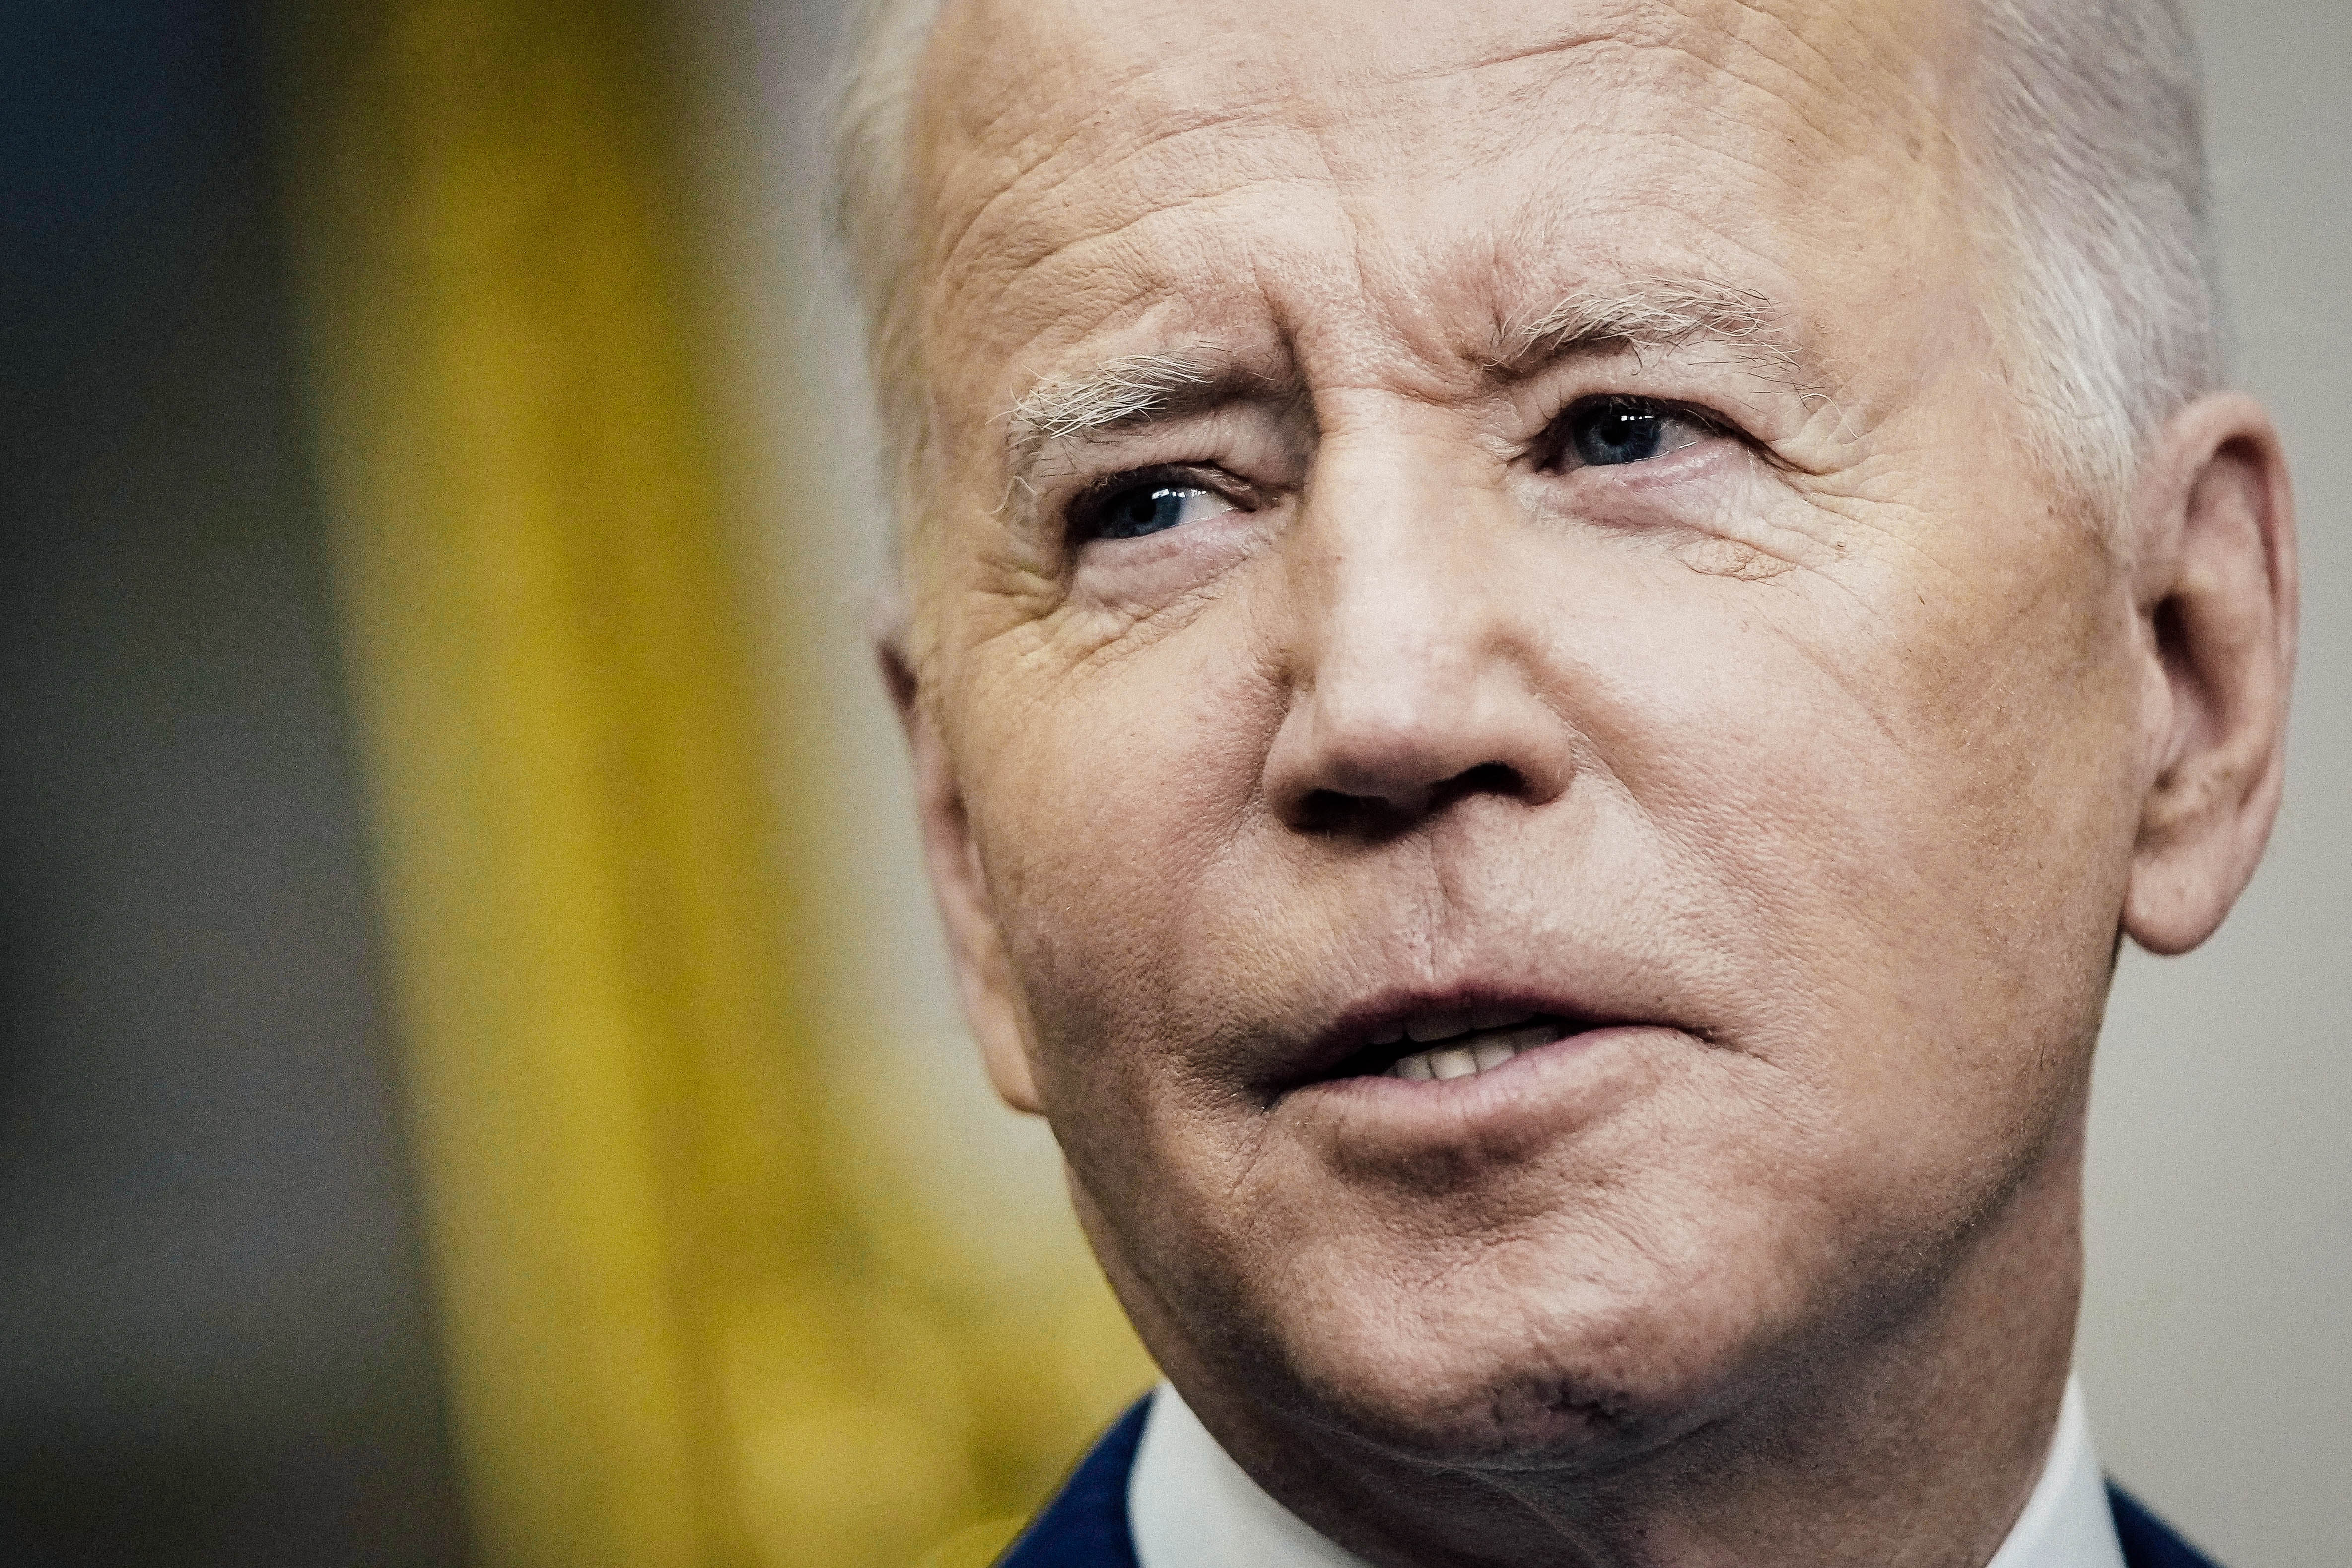 A close-up of Biden